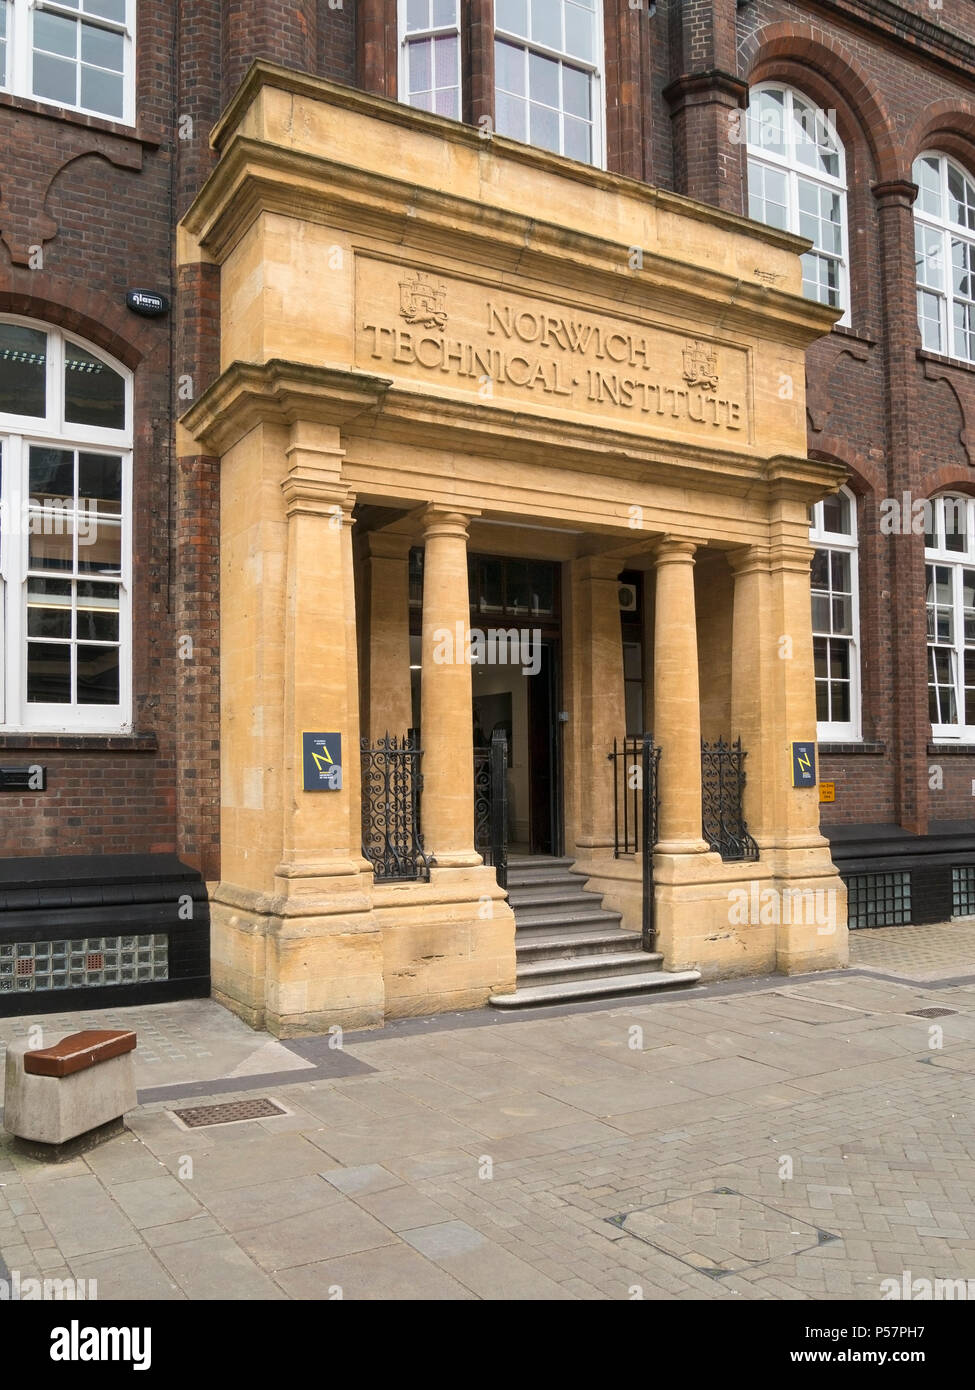 Porche en pierre ouvragée et entrée au bâtiment de l'Institut technique de Norwich (maintenant St George's Building, Norwich University of the Arts), Norwich, Angleterre. Banque D'Images